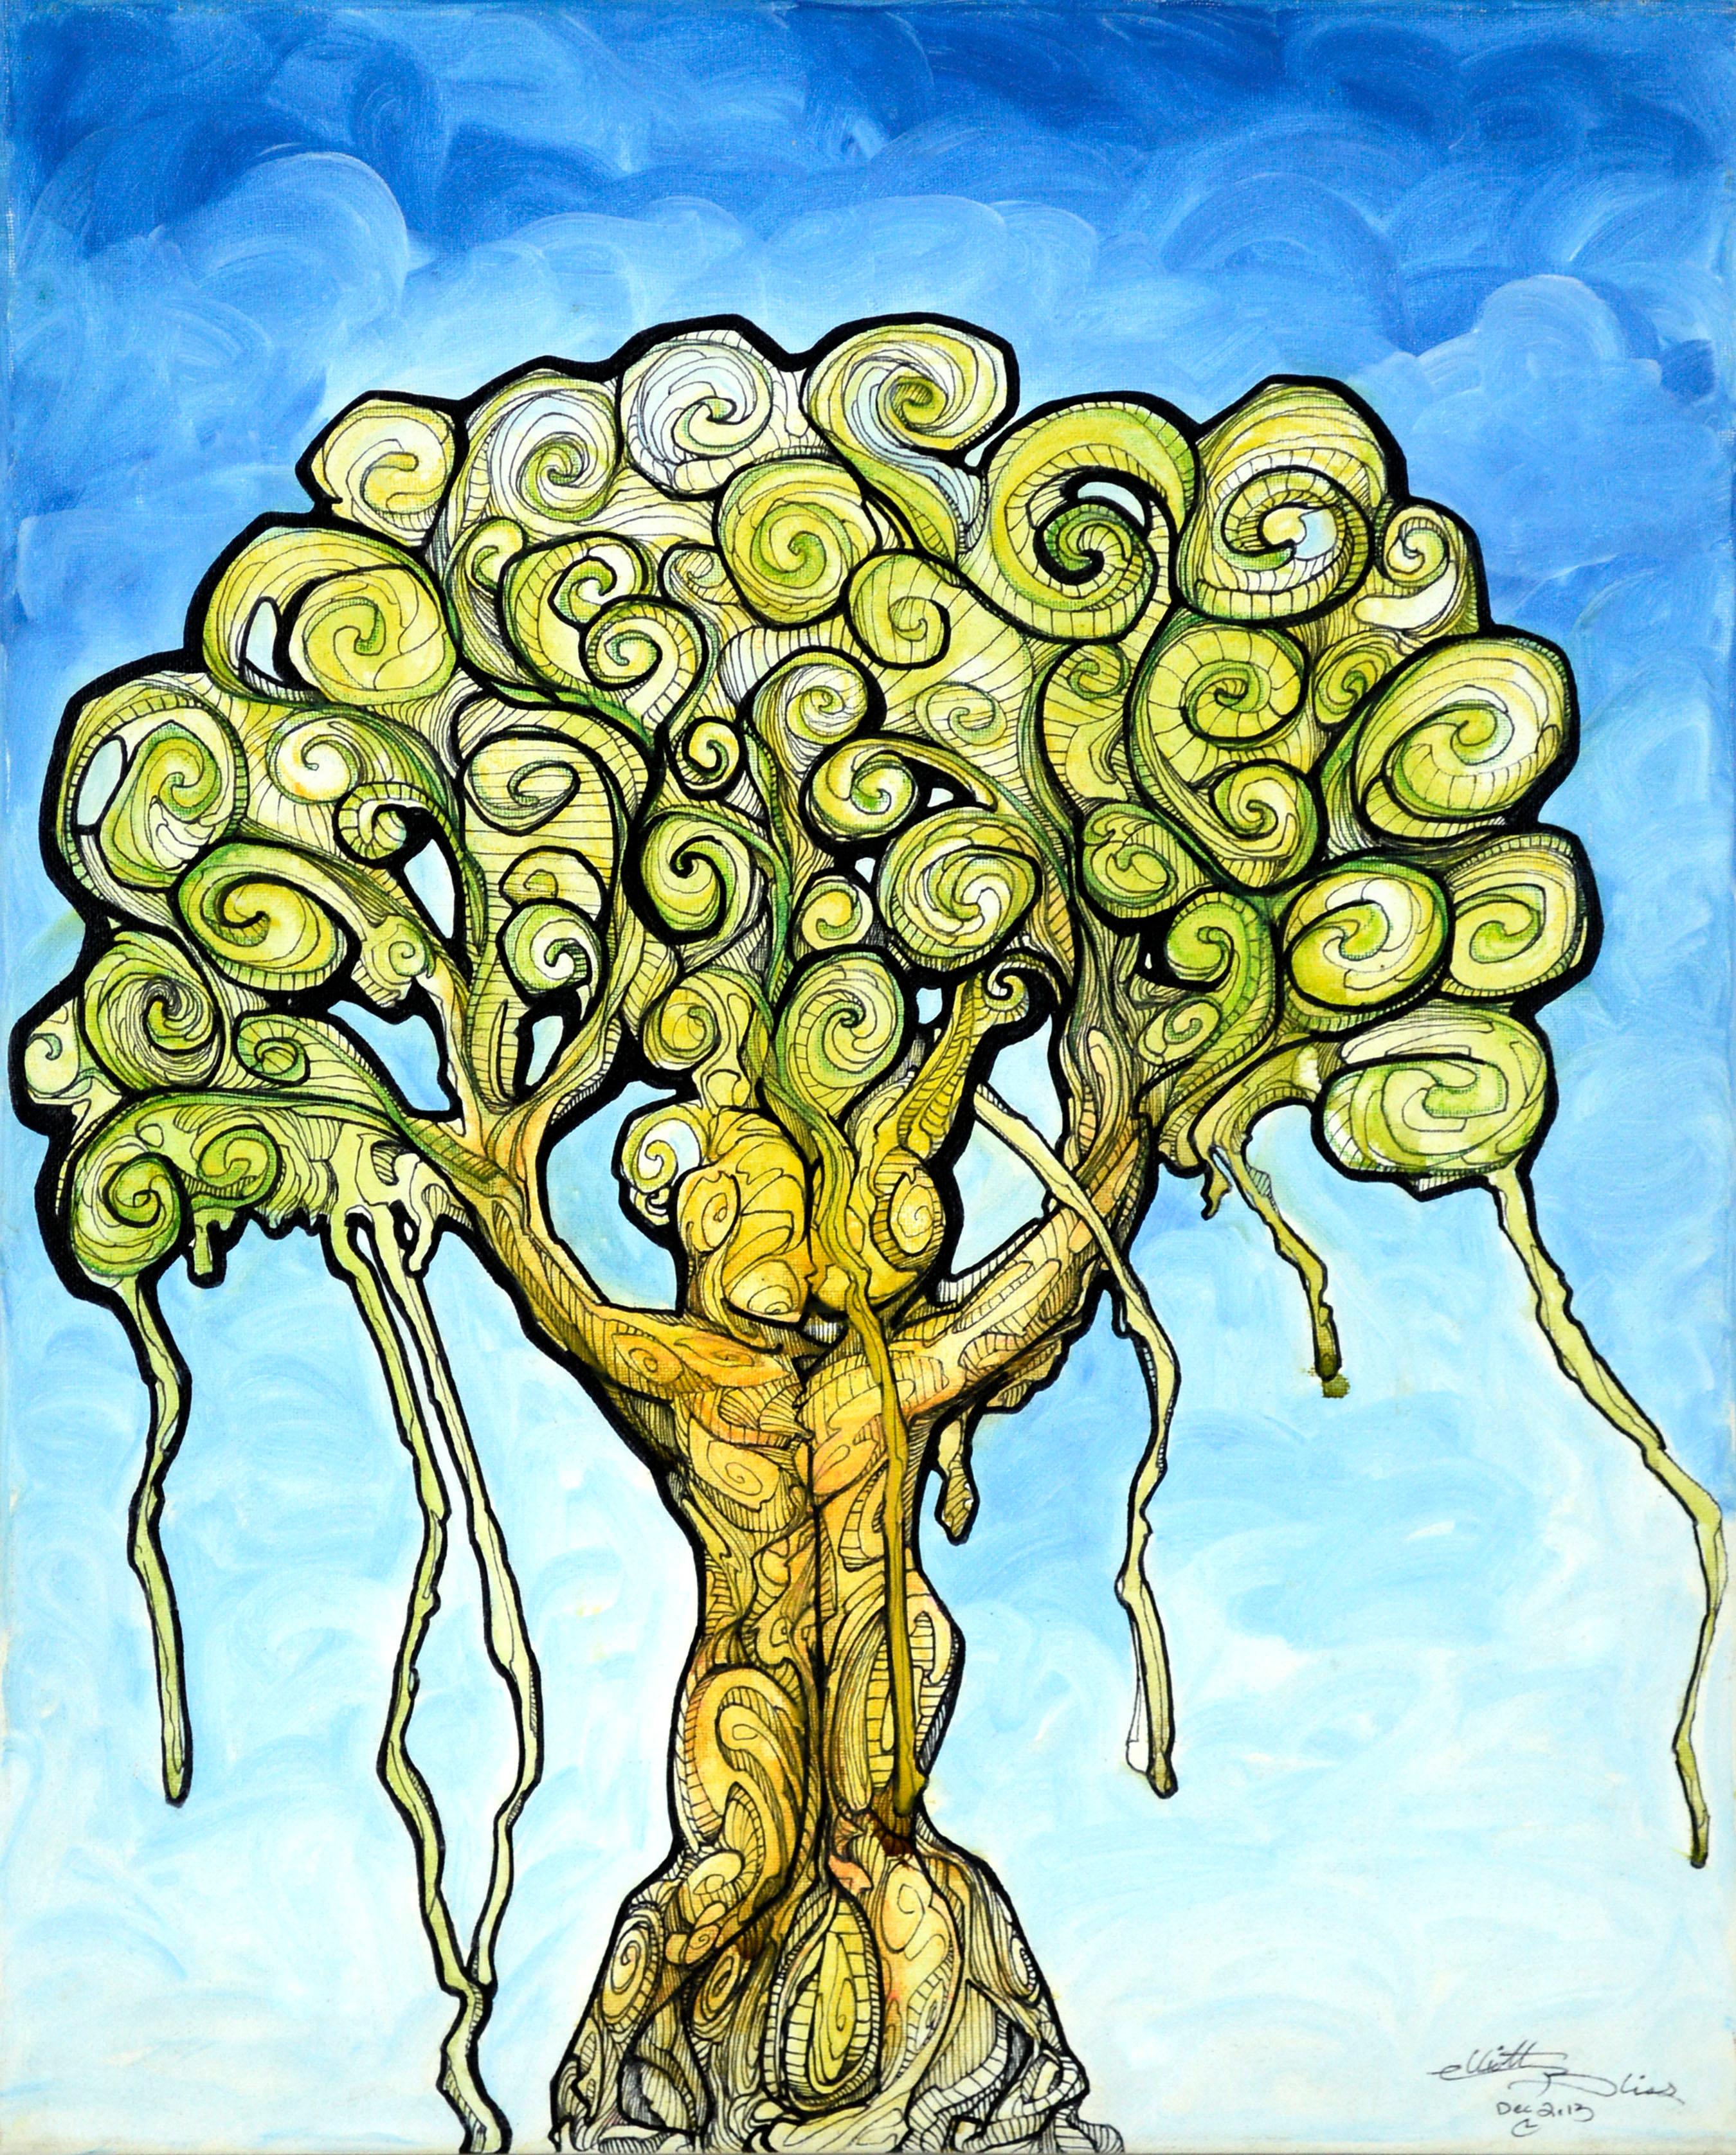 Baum Menschen umarmen, zeitgenössische, visionäre, figurative und abstrakte Baumfigur